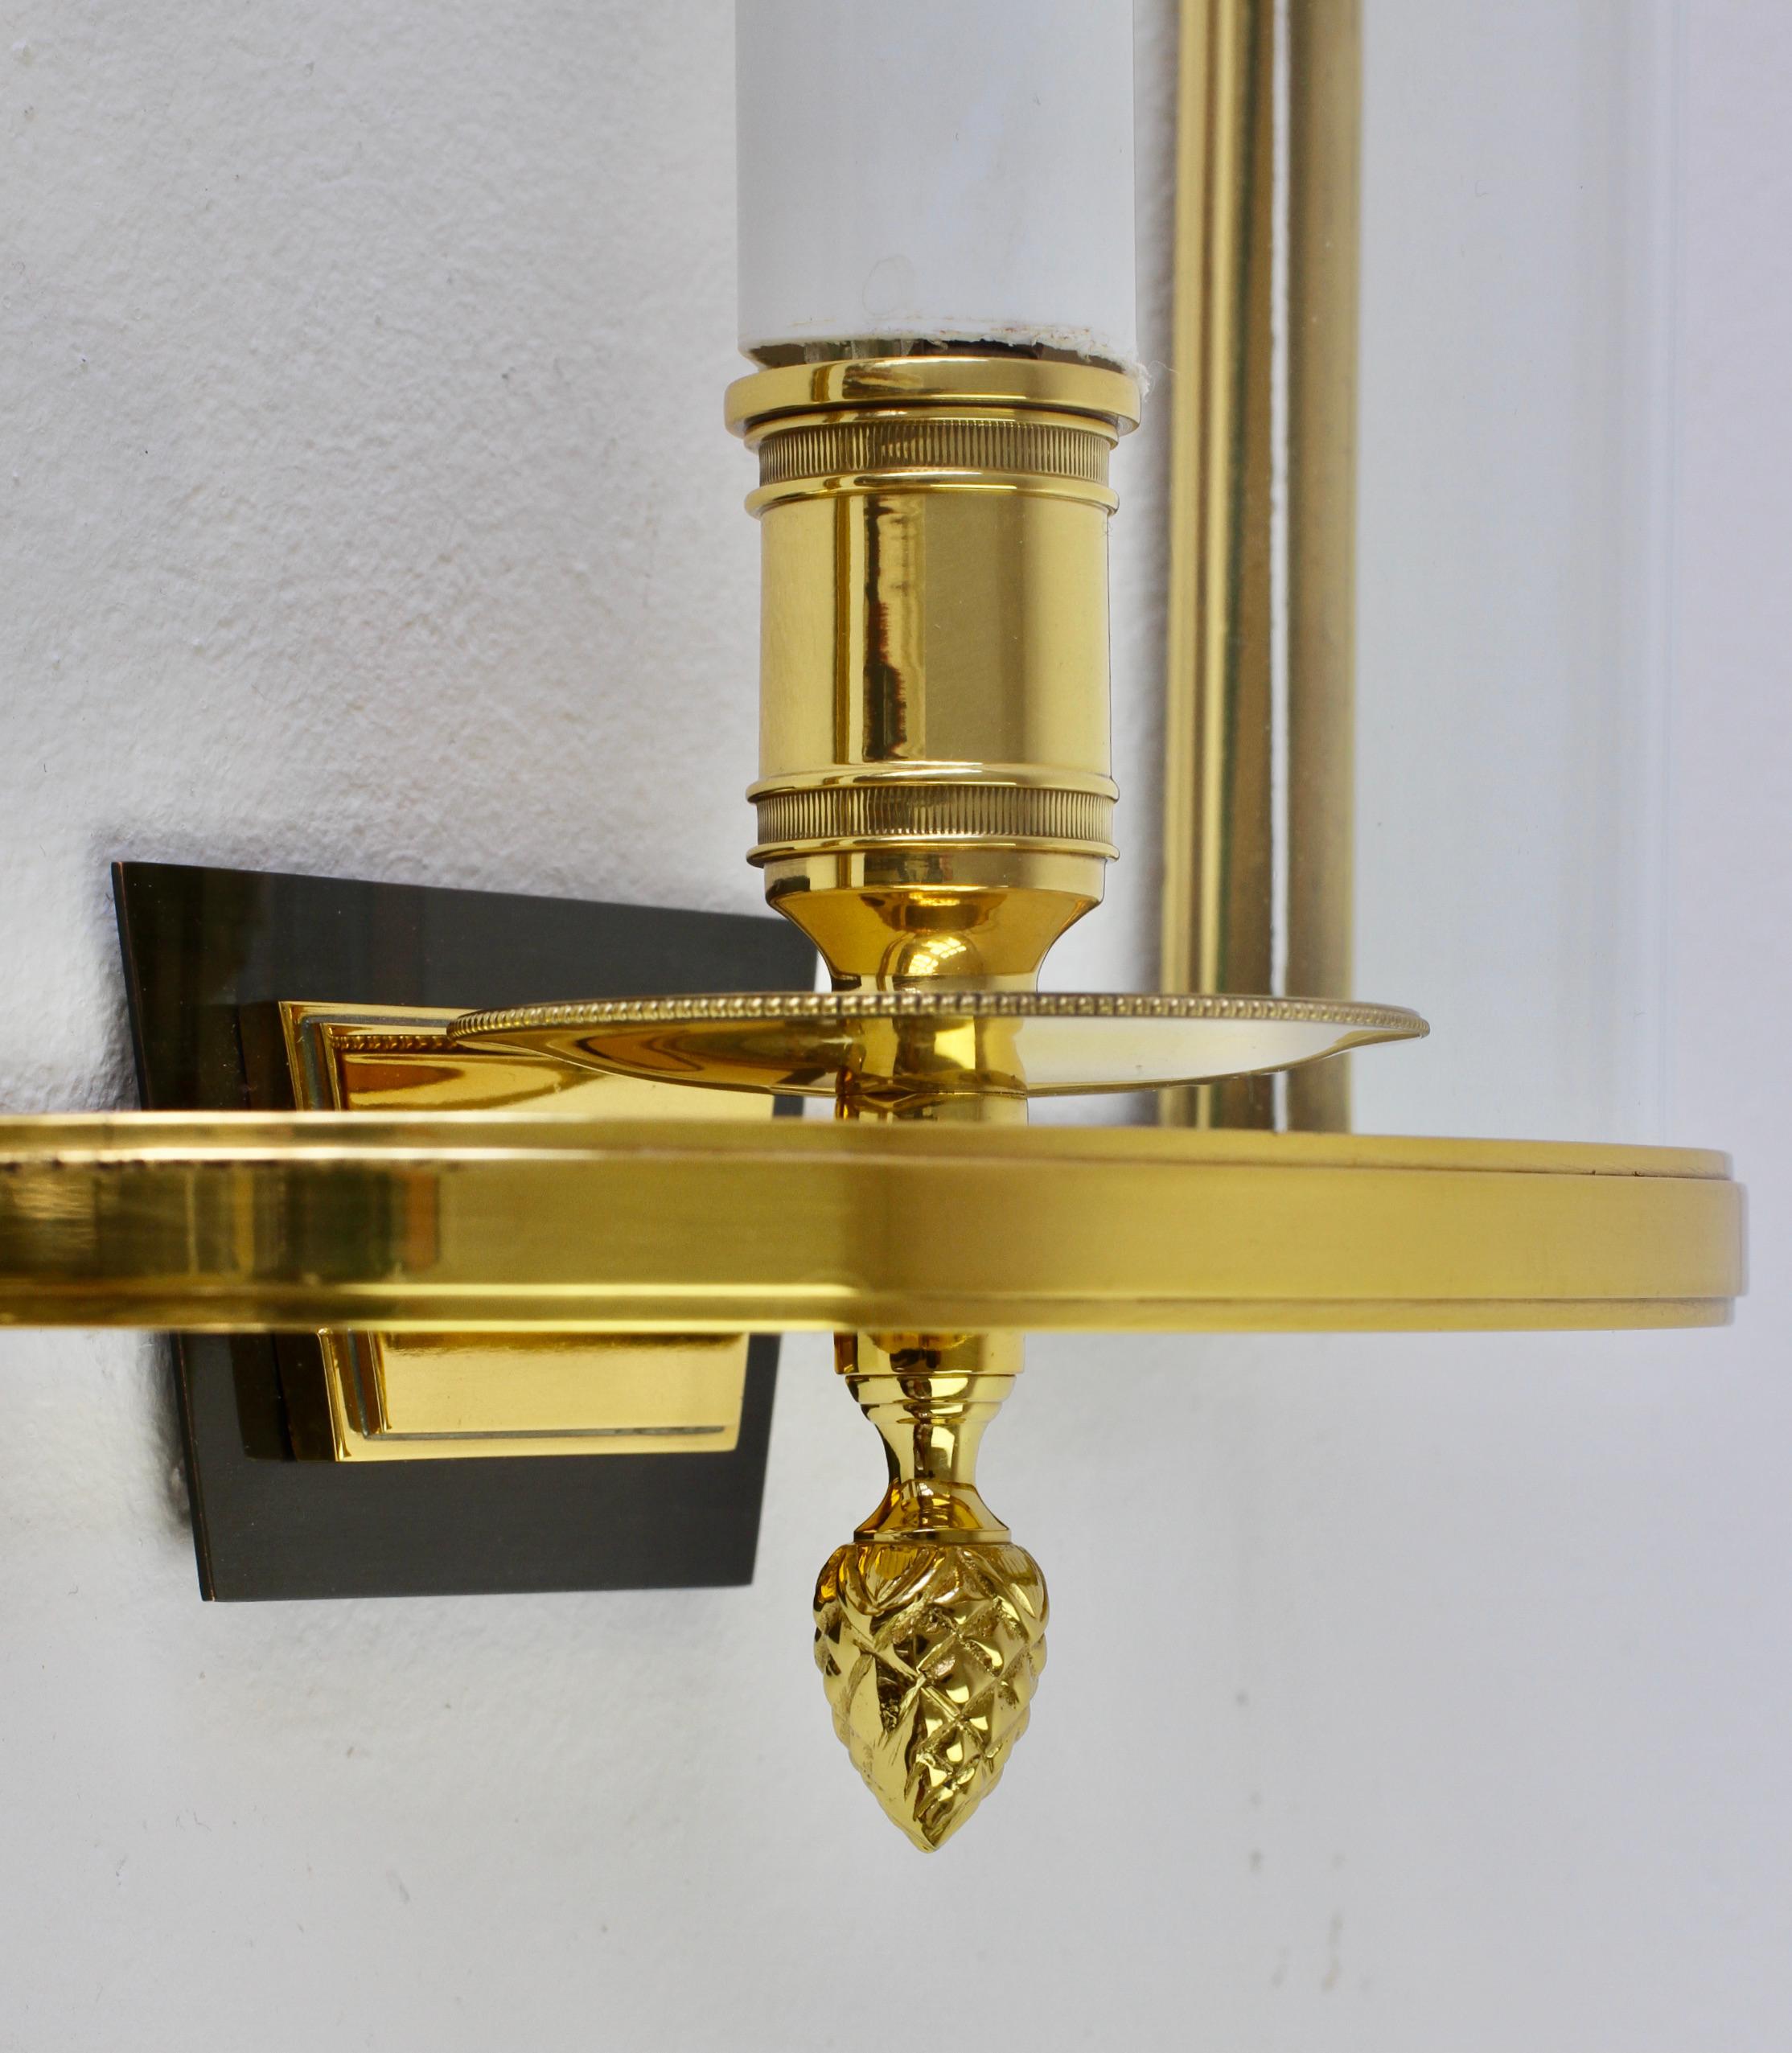 Pair of Maison Jansen Style Polished Brass Sconces by Vereinigte Werkstätten For Sale 8